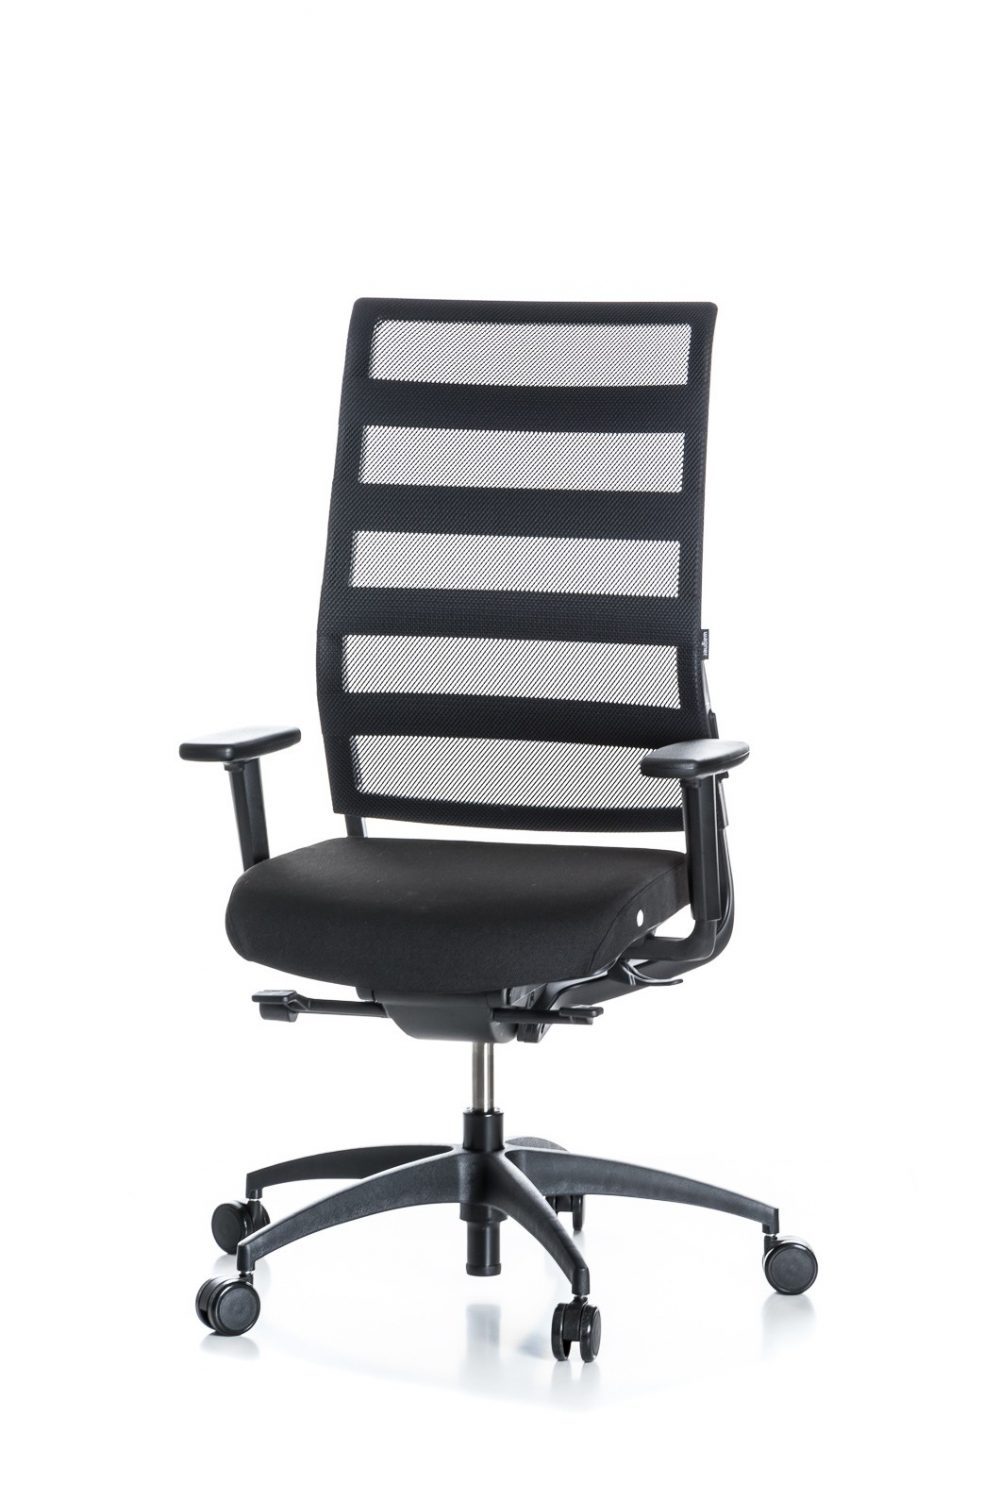 Biuro kėdė, funkcionali kėdė, biuro kedes, biuro kėdės, biuro kede, kedes, darbo kedes, biuro baldai, rašomojo stalo kėdė, žaidimų kėdė, kėdžių rojus, Patogi biuro kėdė, patogi biuro kede, pigi biuro kėdė, pigi biuro kede, biuro kėdės, biuro kedes, biuro kėdę, biuro kedę, reguliuojamo aukščio biuro kėdė ant ratukų, reguliuojamo aukščio biuro kede ant ratuku, kokybiškos biuro kedes, kokybiskos biuro kedes, kokybiškos biuro kėdės, Biuro darbo kėdė, Vadovo kede, vadovo kėdės, vadovo kedes, direktoriaus kėdė, direktoriaus kede, brangi kėdė, brangi kede, kokybiška kėdė, kokybiška kede, Kėdė darbui, kėdė darbui ofise, darbo kede, kede darbui, darbininko kėdė, darbininko kede, kedes biuro darbui, kedes darbui biure, kėdės darbui biure, kėdės darbui biure, Biuro darbo kėdė, Ofiso kėdės, ofiso kedes, ofiso kede, biuro kede, darbo kede, ofiso aplinkos kede, kede ofisui, ofiso kėdės, Patogi darbo vieta, patogi kėdė, patogi kede, sveika kėdė, sveika kede, ergonominis mechanizmas, aktyvus sedėjimas, aktyvaus sedėjimo kėdė, Ergonominė kėdės, Ergonominė biuro kėdė, ergonomine biuro kede, ergonominę kėdę, Ergonomiska kede, patogi kede, patogi kėdė, biuro kėdės, kėdė kamuolys, aktyvus sėdėjimas, aktyvaus sėdėjimo kėdė, biuro kėdė, biuro kėdės, darbo kede, darbo kėdės, ofiso kėdė, ergonomiška kėdė, ergonominis sėdėjimas, ergonomika, ergonominė darbo vieta, namų biuras,